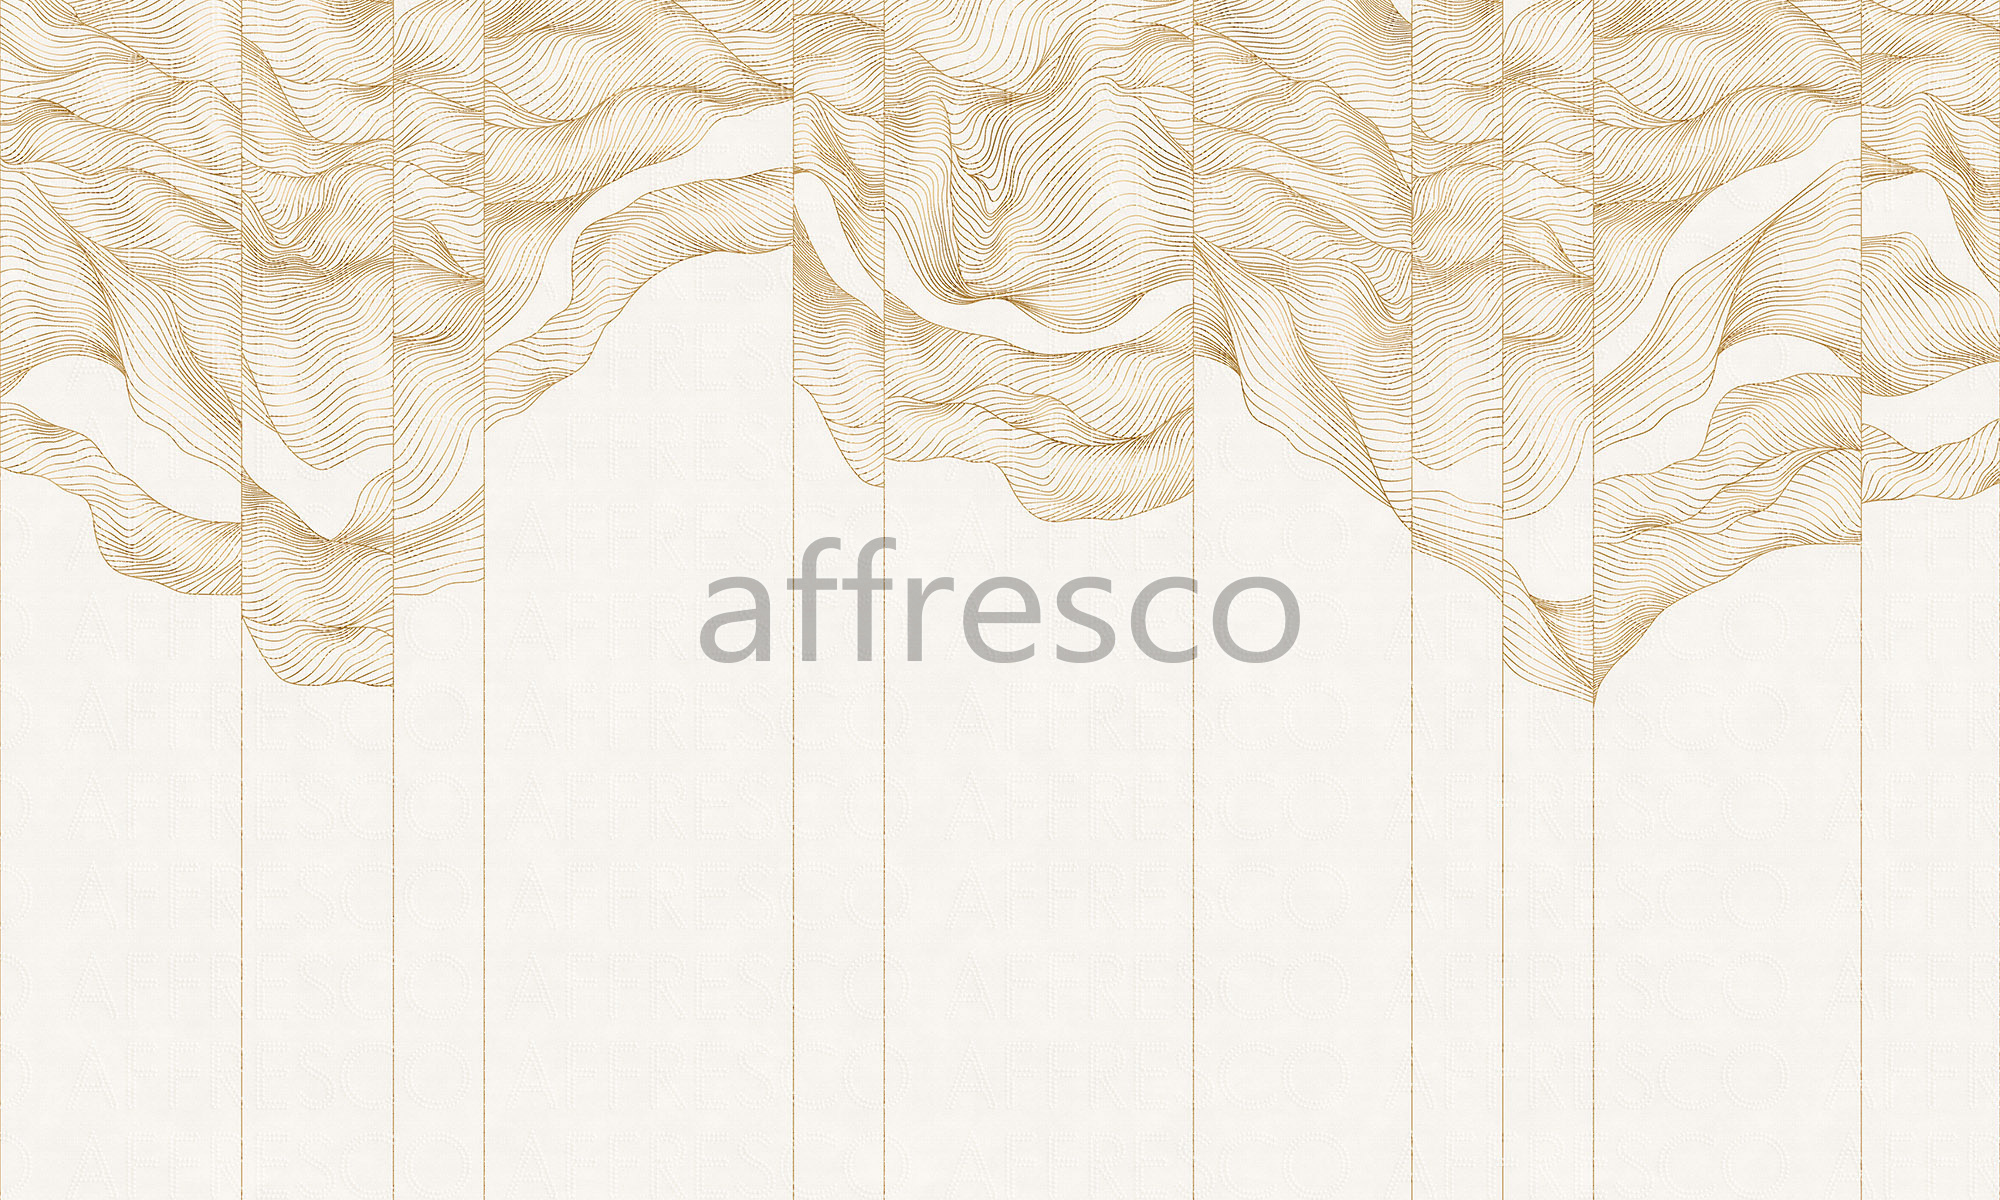 AF2103-COL1 | Line Art | Affresco Factory